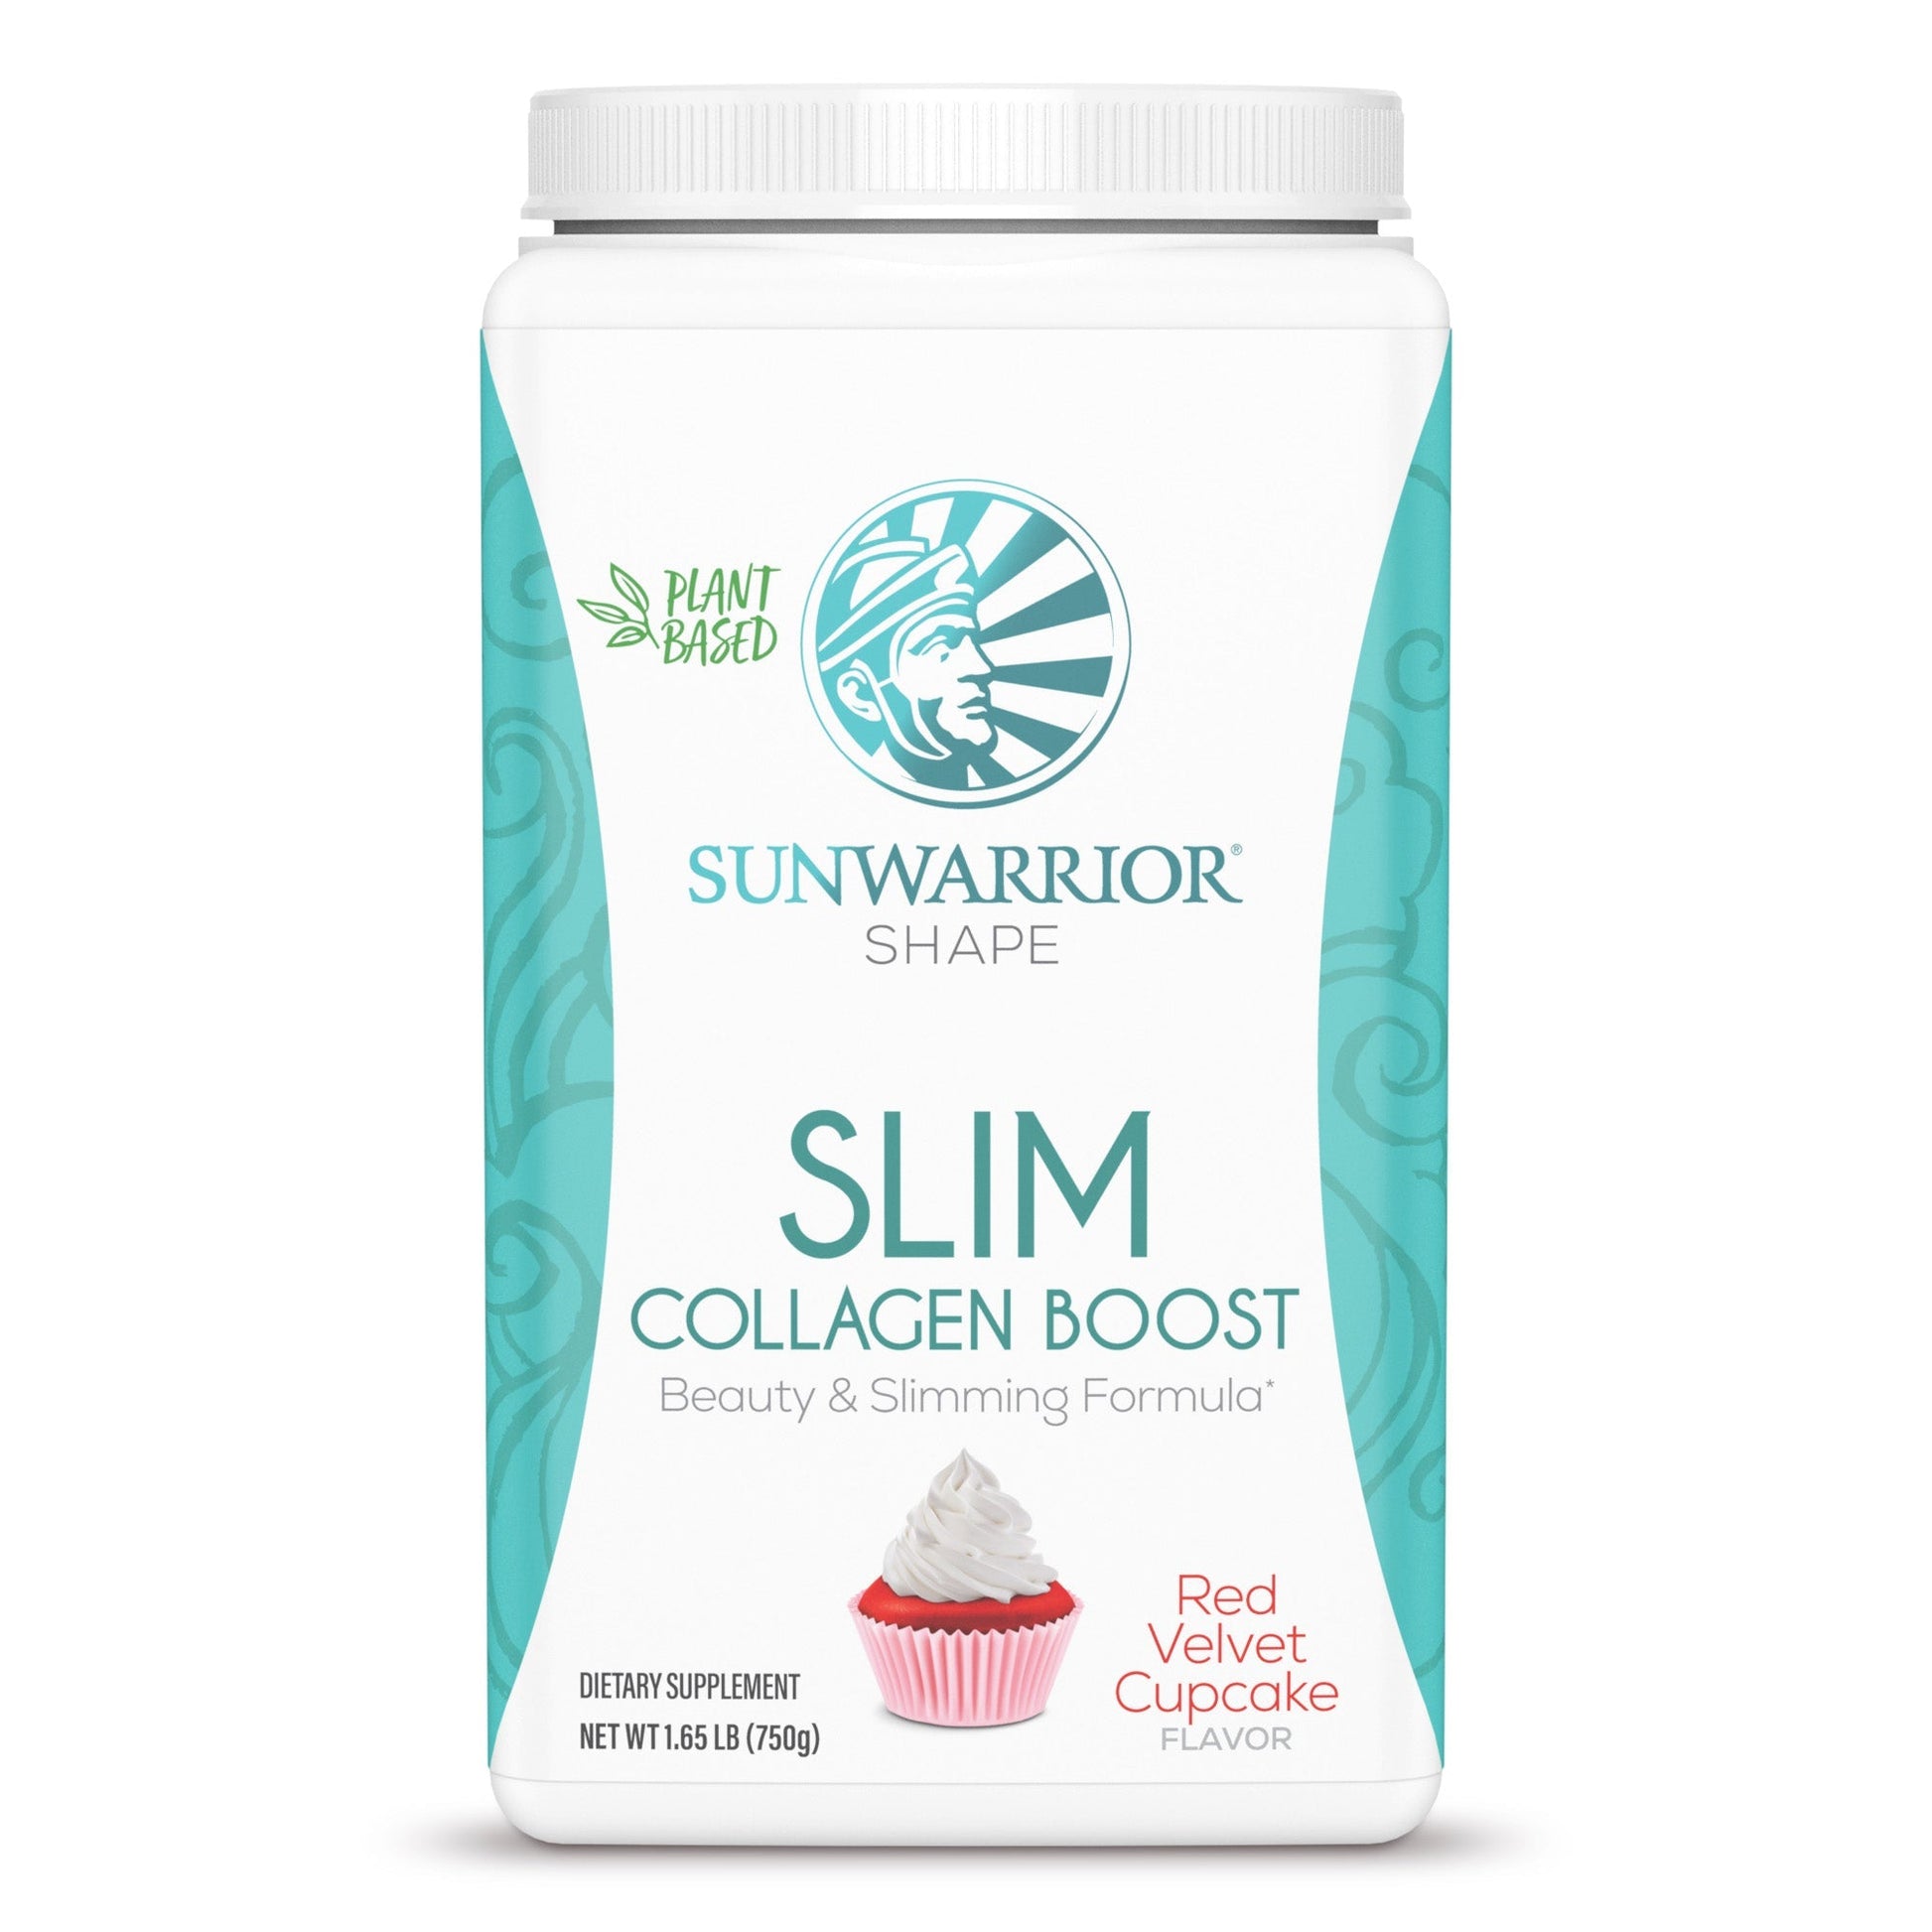 SLIM Collagen Boost - Red Velvet Cupcake Sunwarrior